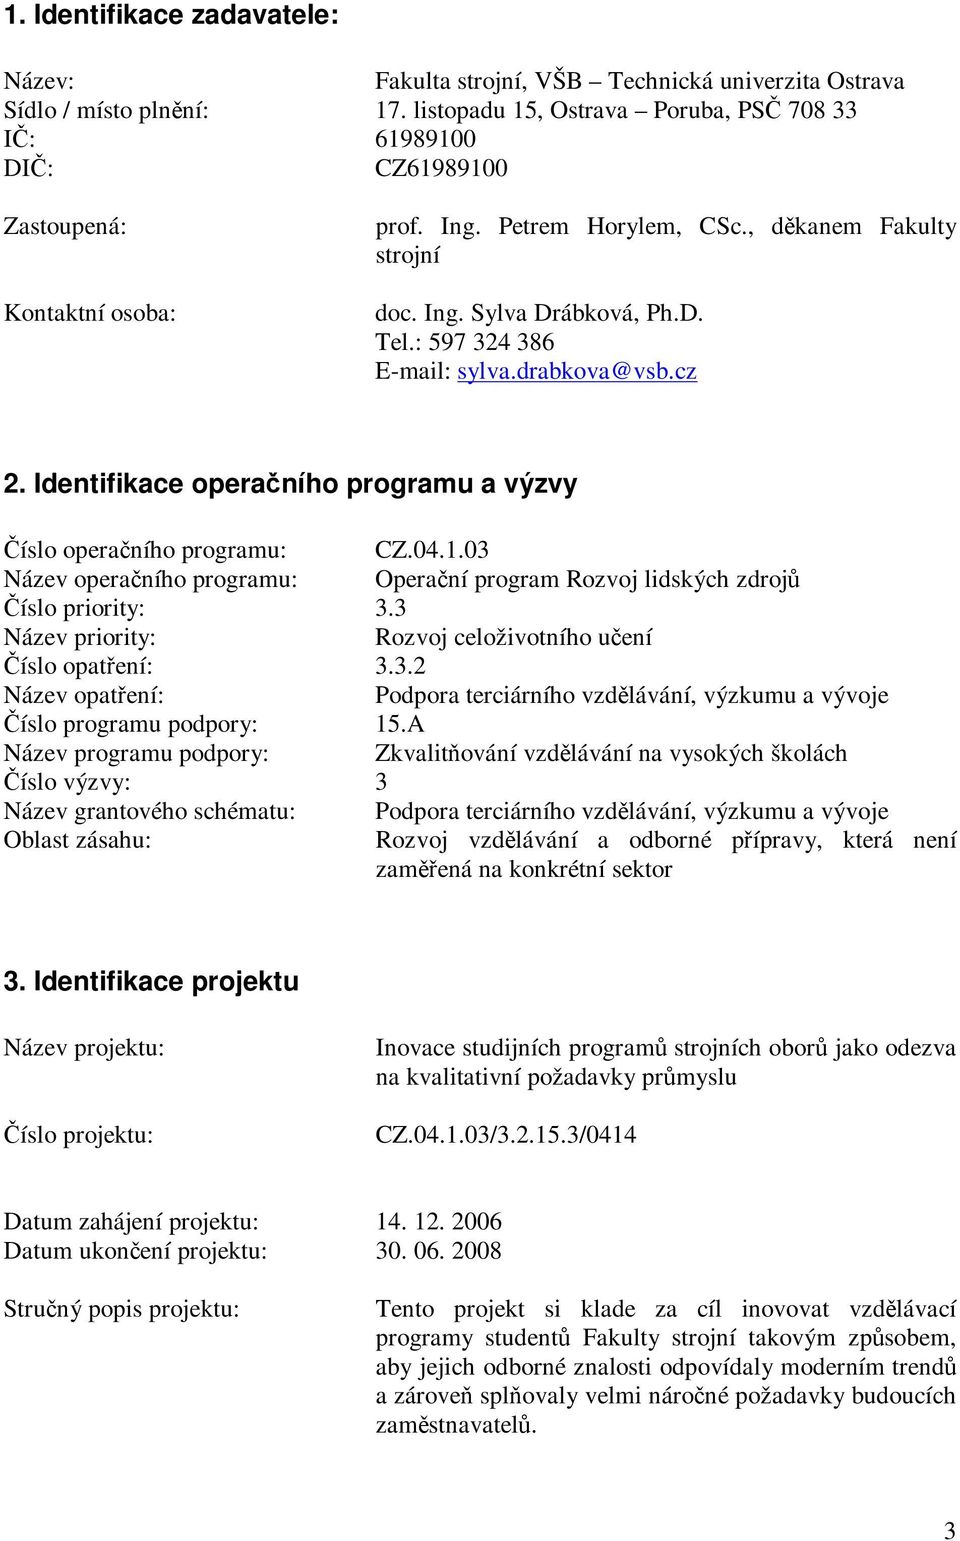 : 597 324 386 E-mail: sylva.drabkova@vsb.cz 2. Identifikace operaního programu a výzvy íslo operaního programu: CZ.04.1.